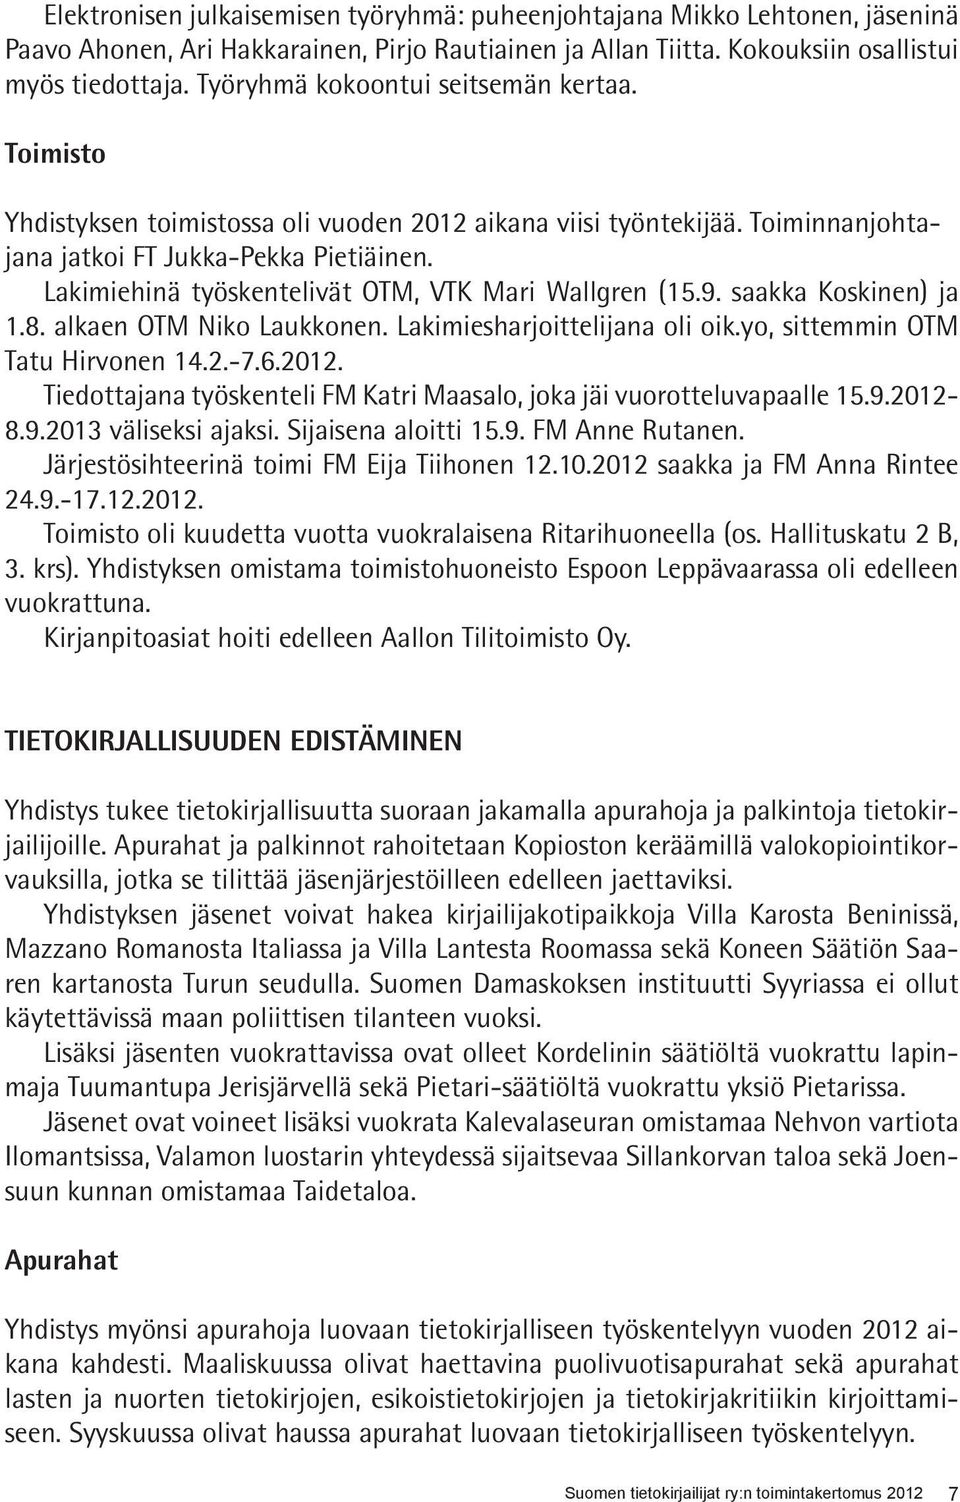 Lakimiehinä työskentelivät OTM, VTK Mari Wallgren (15.9. saakka Koskinen) ja 1.8. alkaen OTM Niko Laukkonen. Lakimiesharjoittelijana oli oik.yo, sittemmin OTM Tatu Hirvonen 14.2.-7.6.2012.